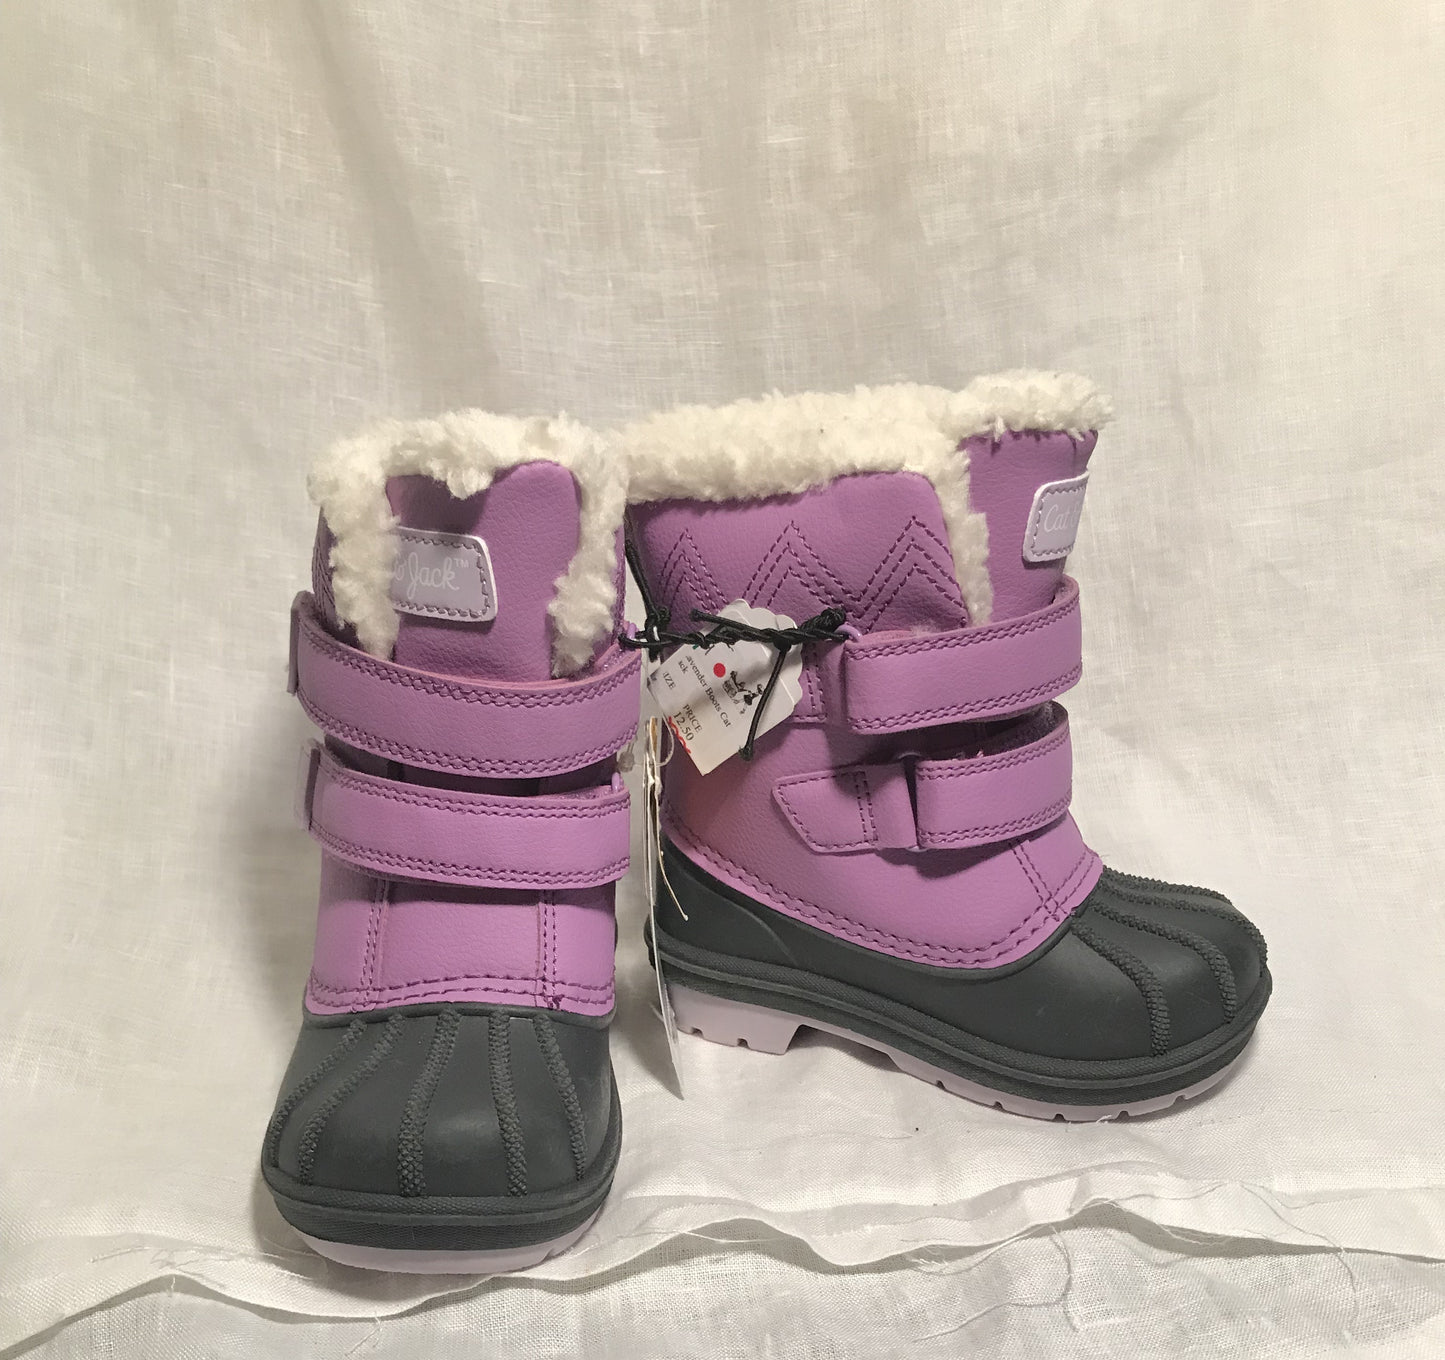 Purple & Black Boots- Size 6